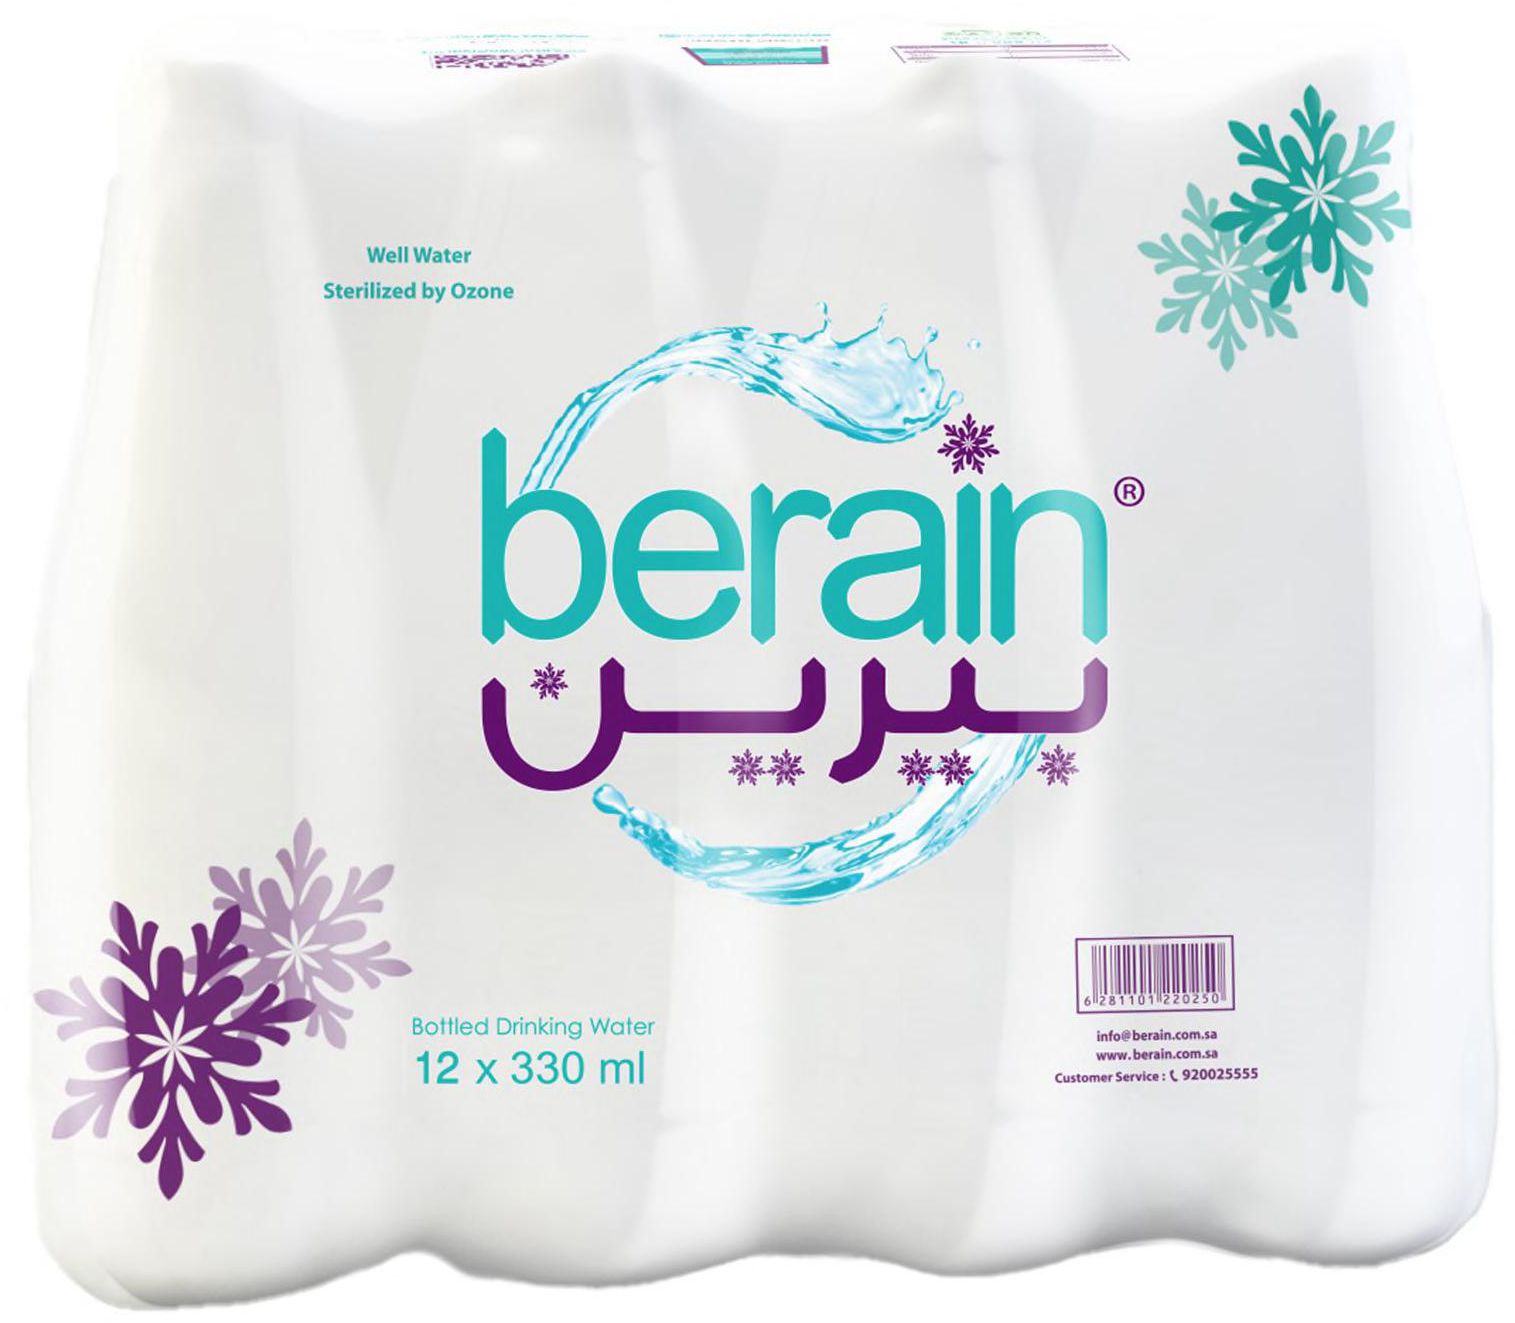 Berain bottled drinking water 330 ml x 12